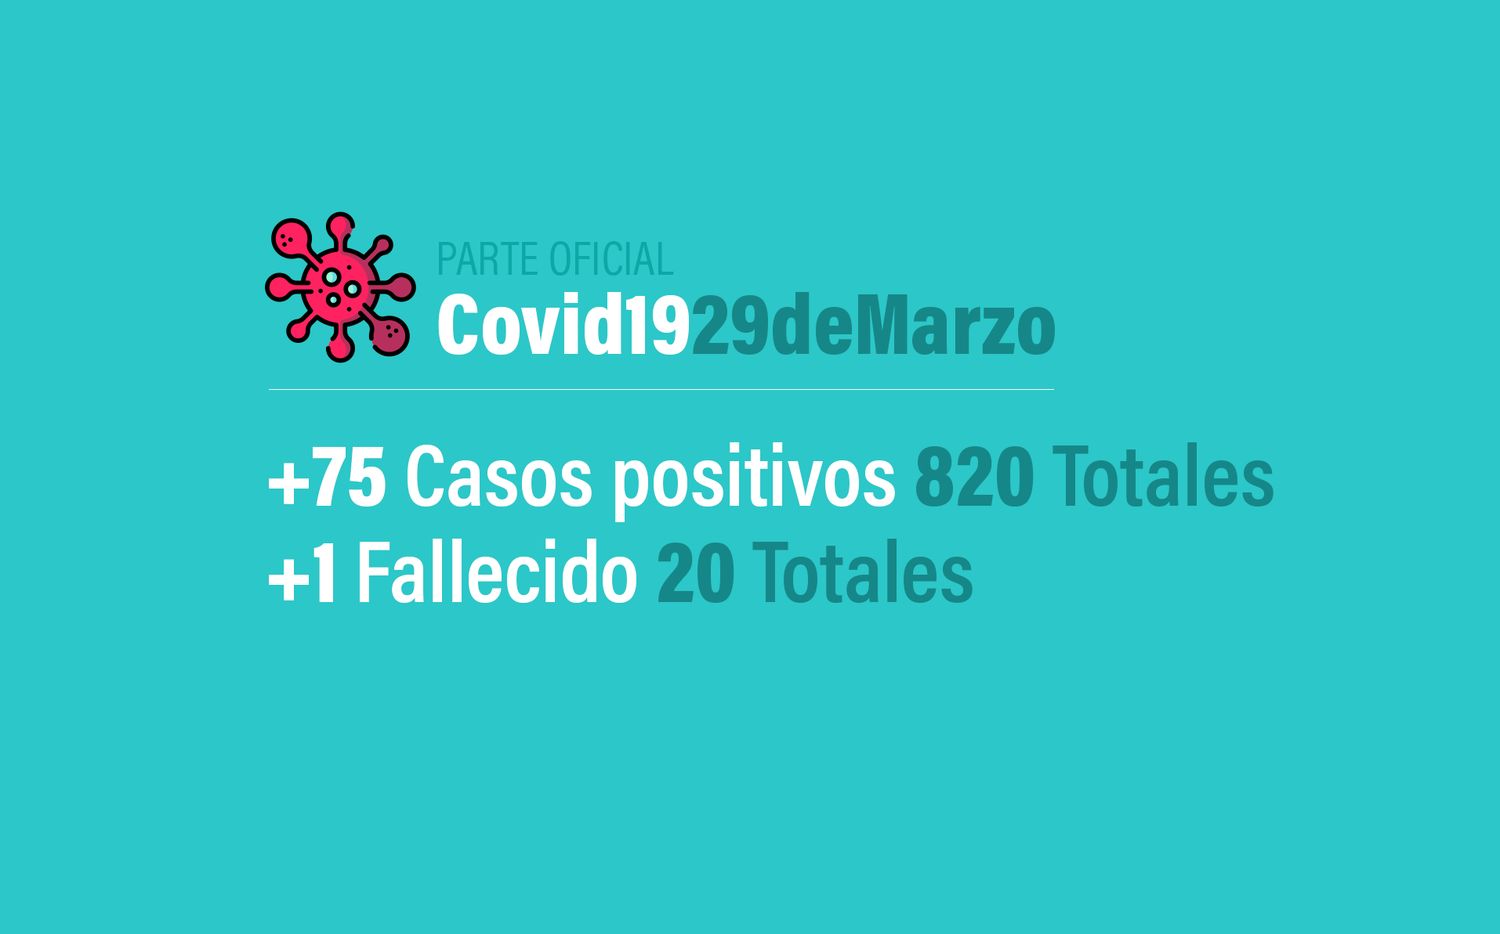 Coronavirus en Argentina: 75 nuevos casos, trepa a 820 infectados en en el país y 20 muertos al 29 de marzo